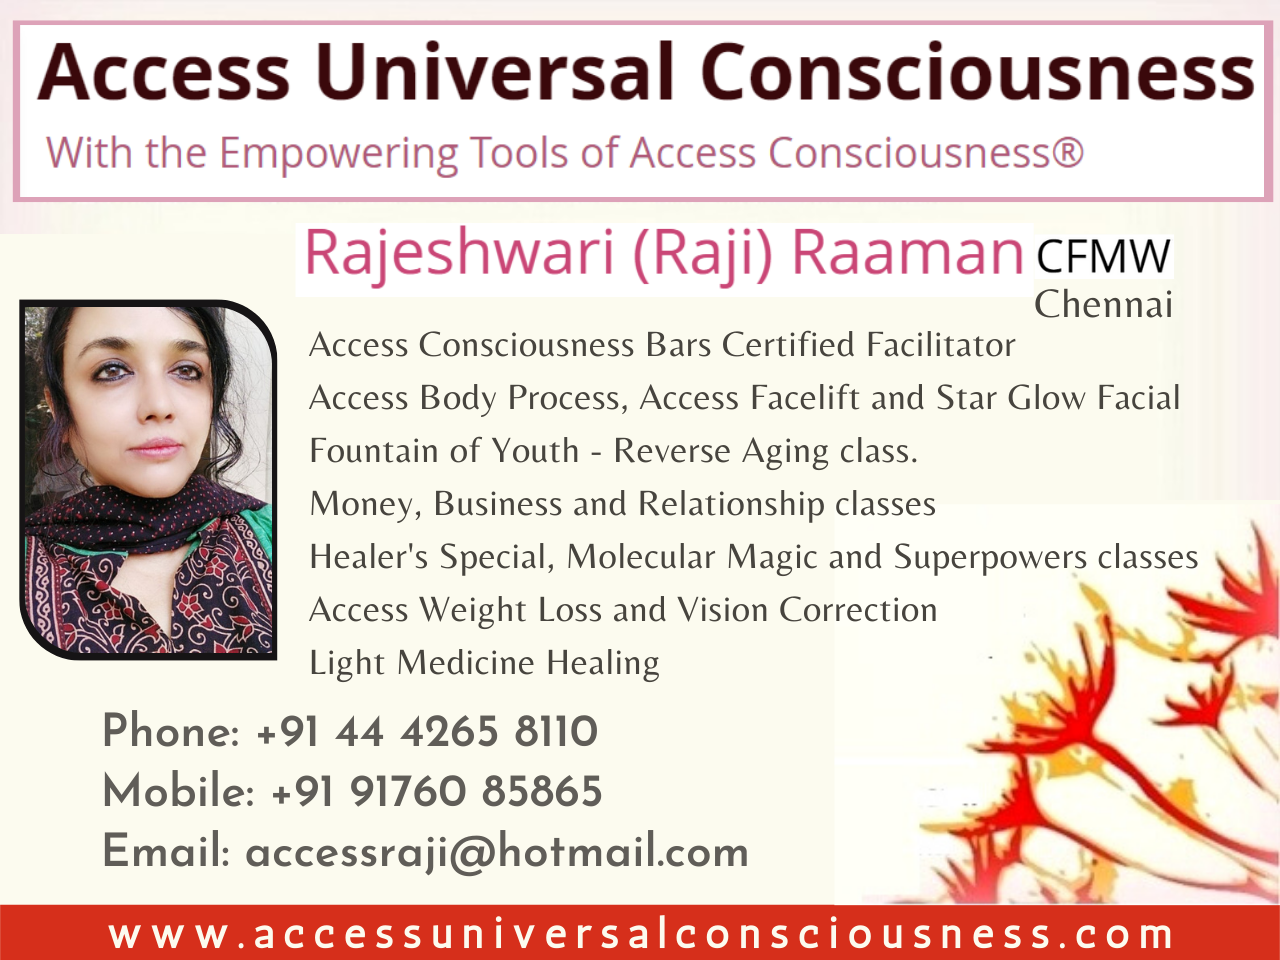 Raji Raaman, Access Consciousness bars and body process Facilitator - Thiruvananthapuram